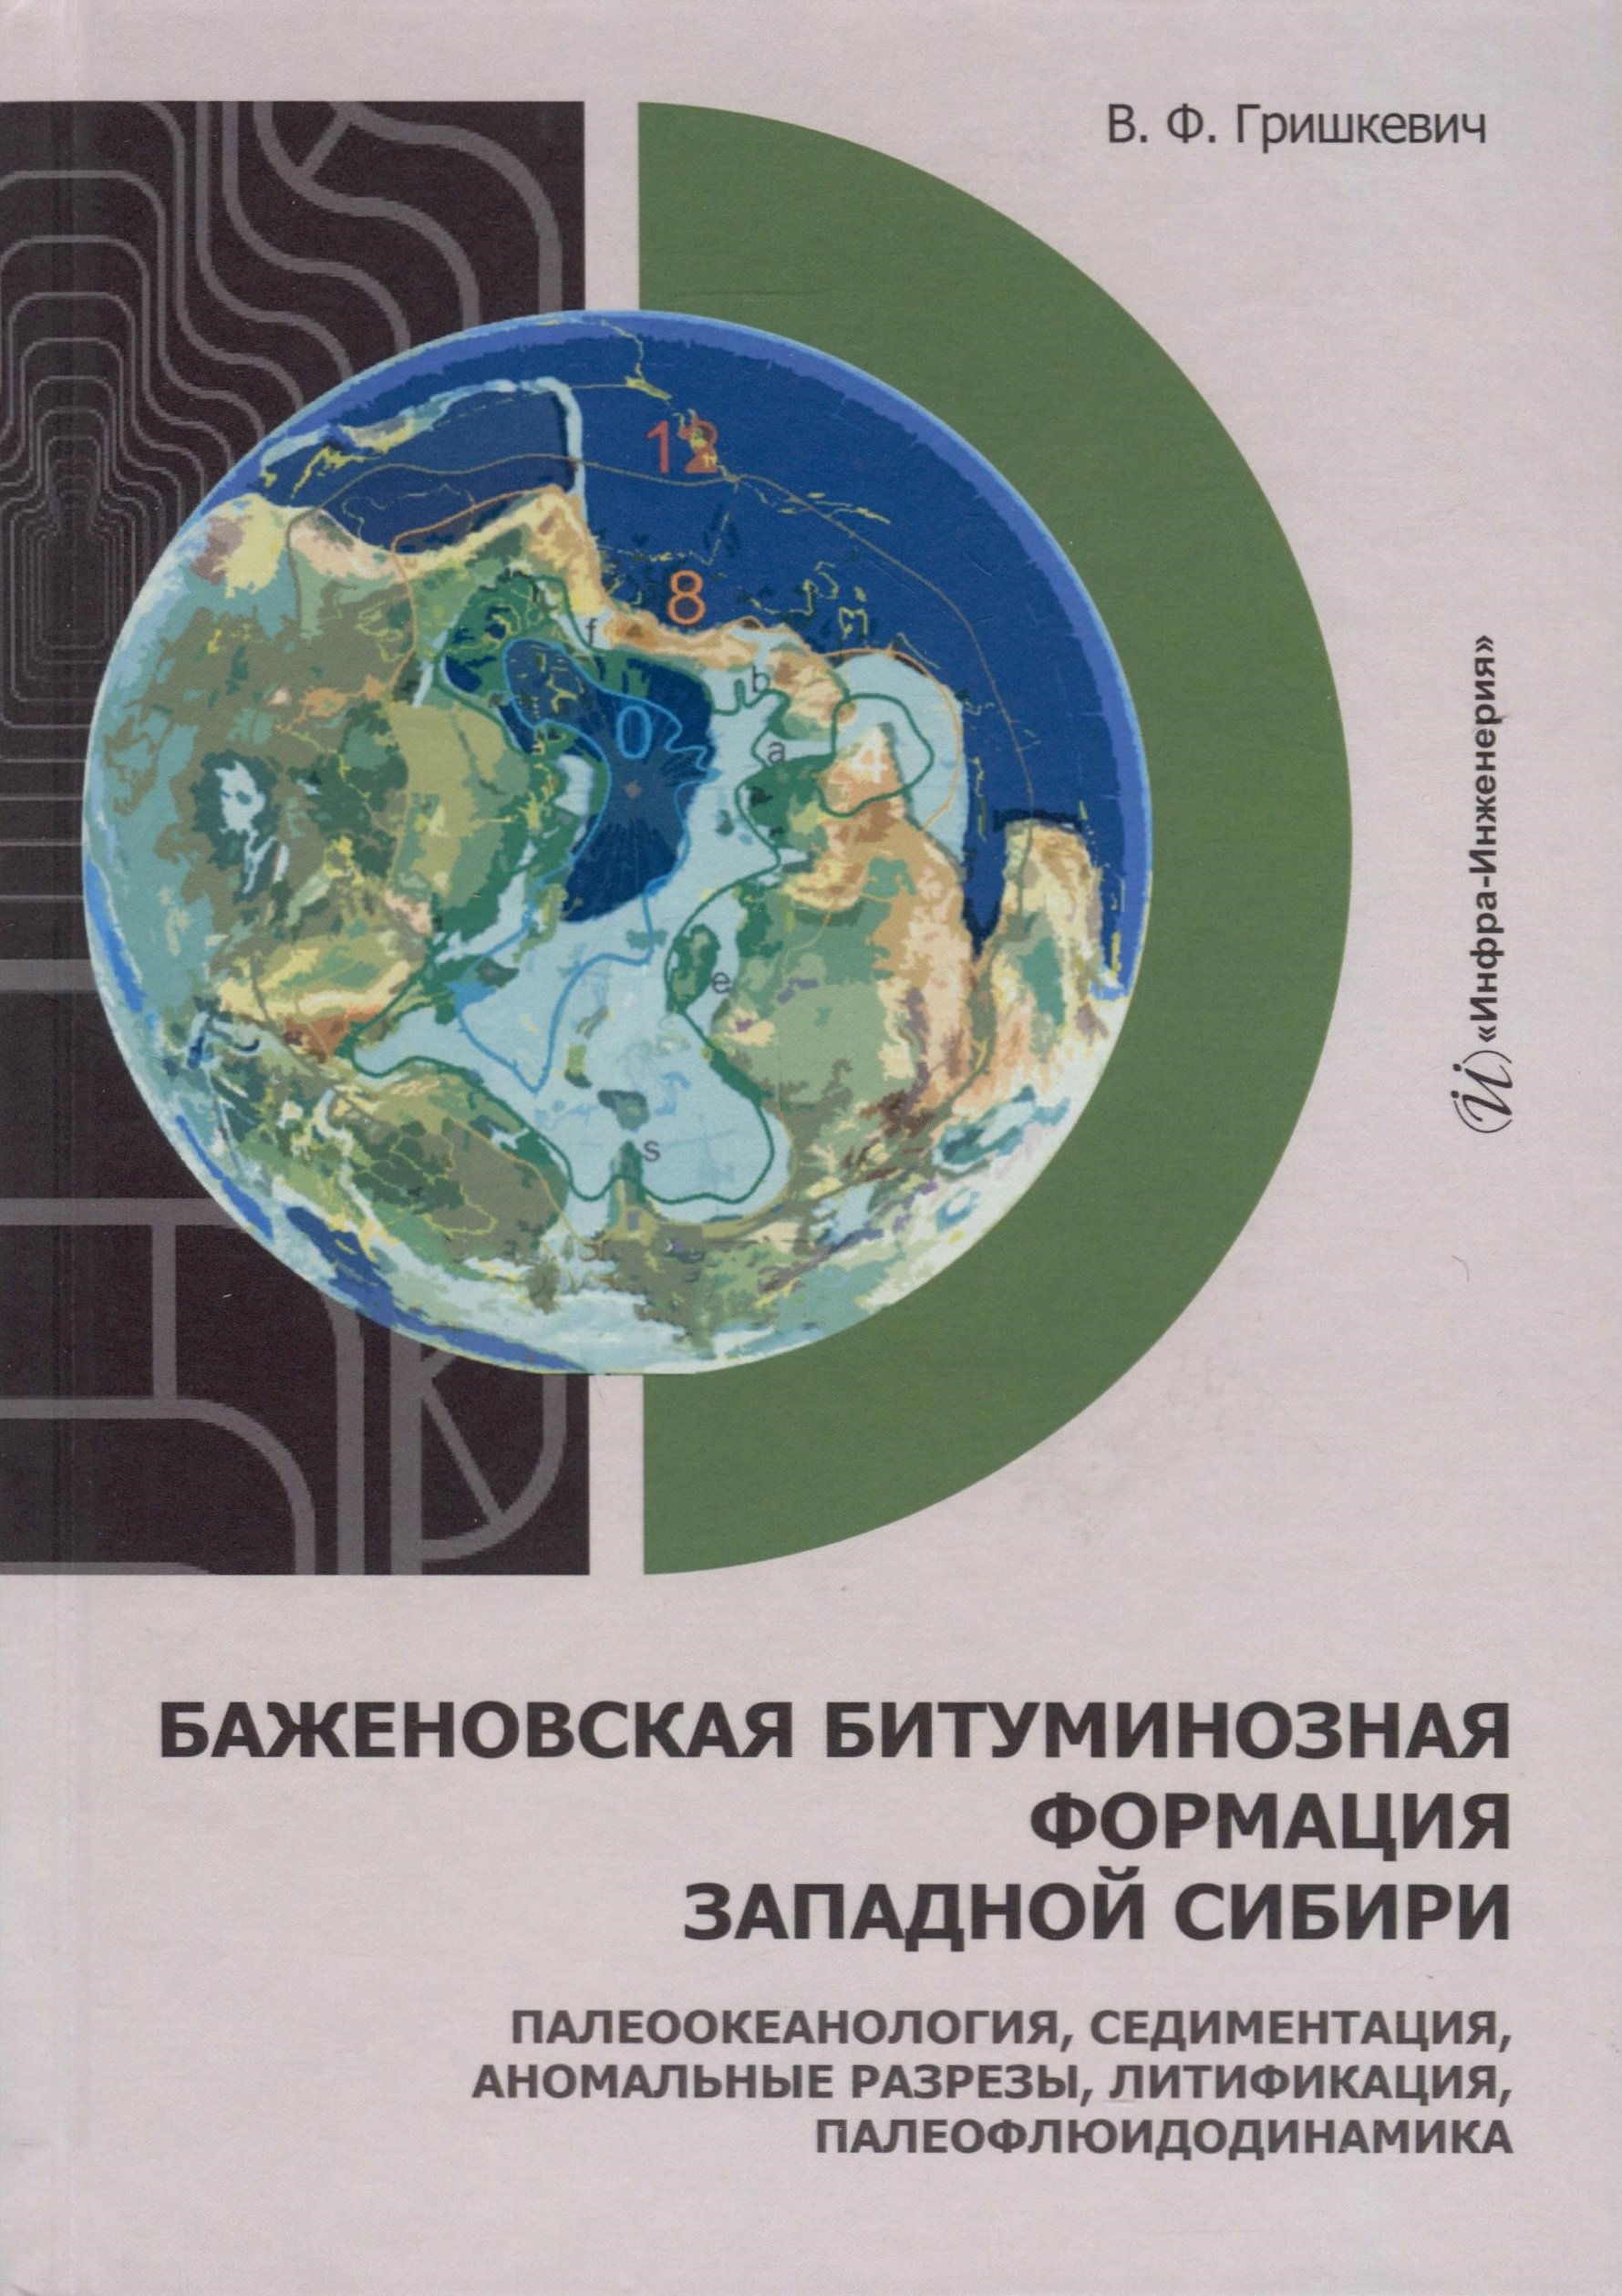 

Баженовская битуминозная формация Западной Сибири: палеоокеанология, седиментация, аномальные разрезы, литификация, палеофлюидодинамика